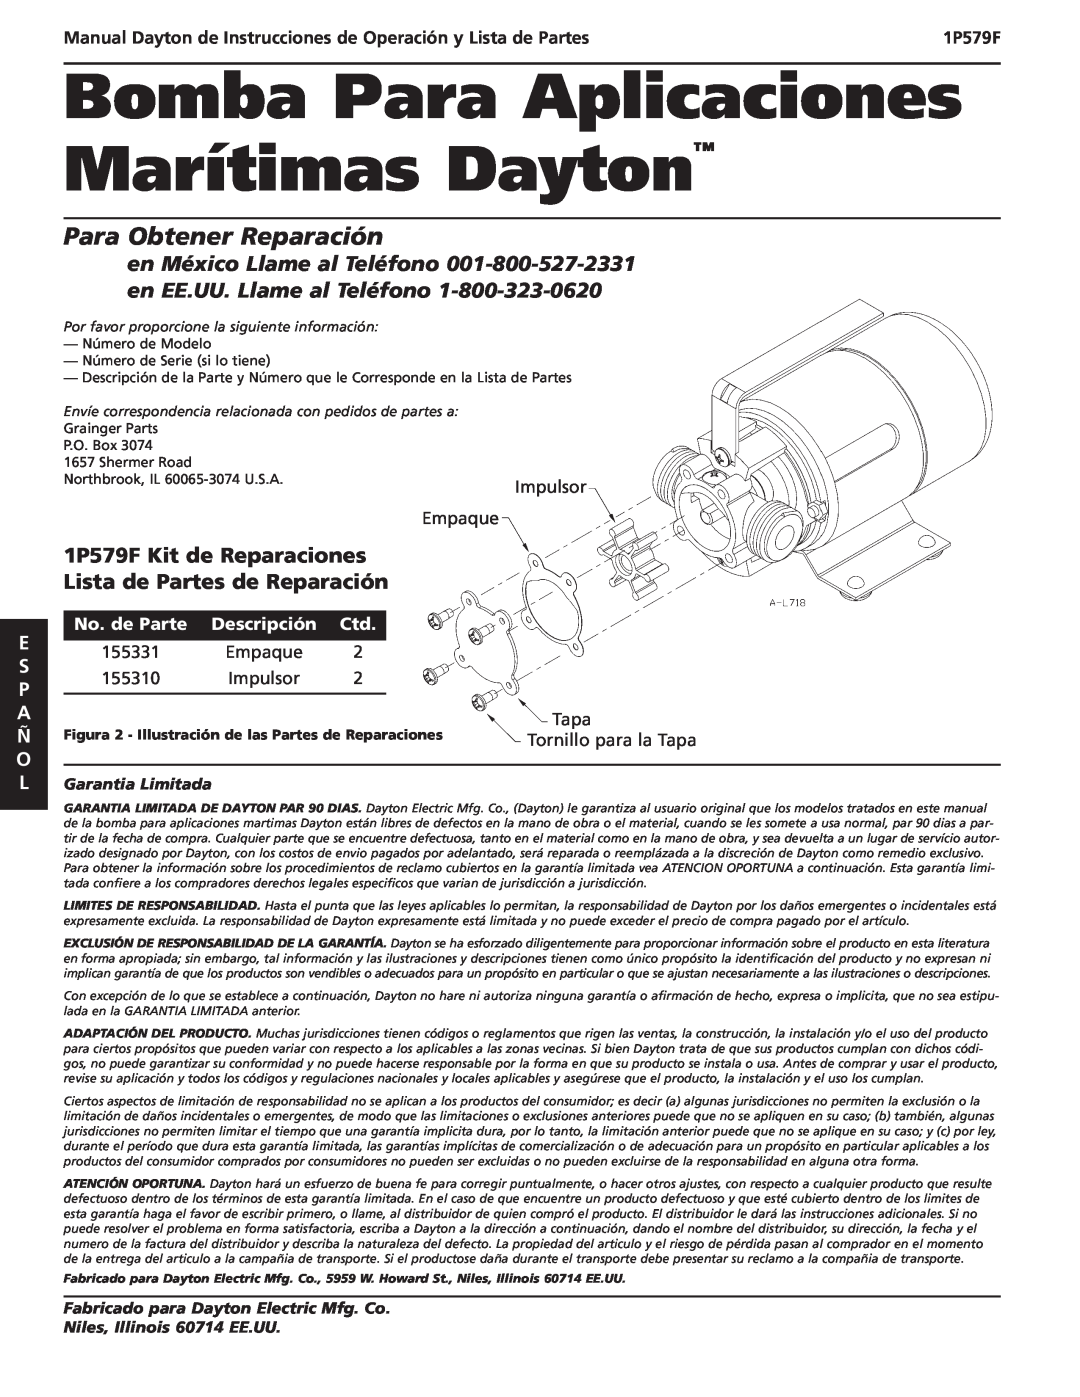 Dayton Para Obtener Reparación, 1P579F Kit de Reparaciones Lista de Partes de Reparación, Impulsor, Empaque, P.O. Box 